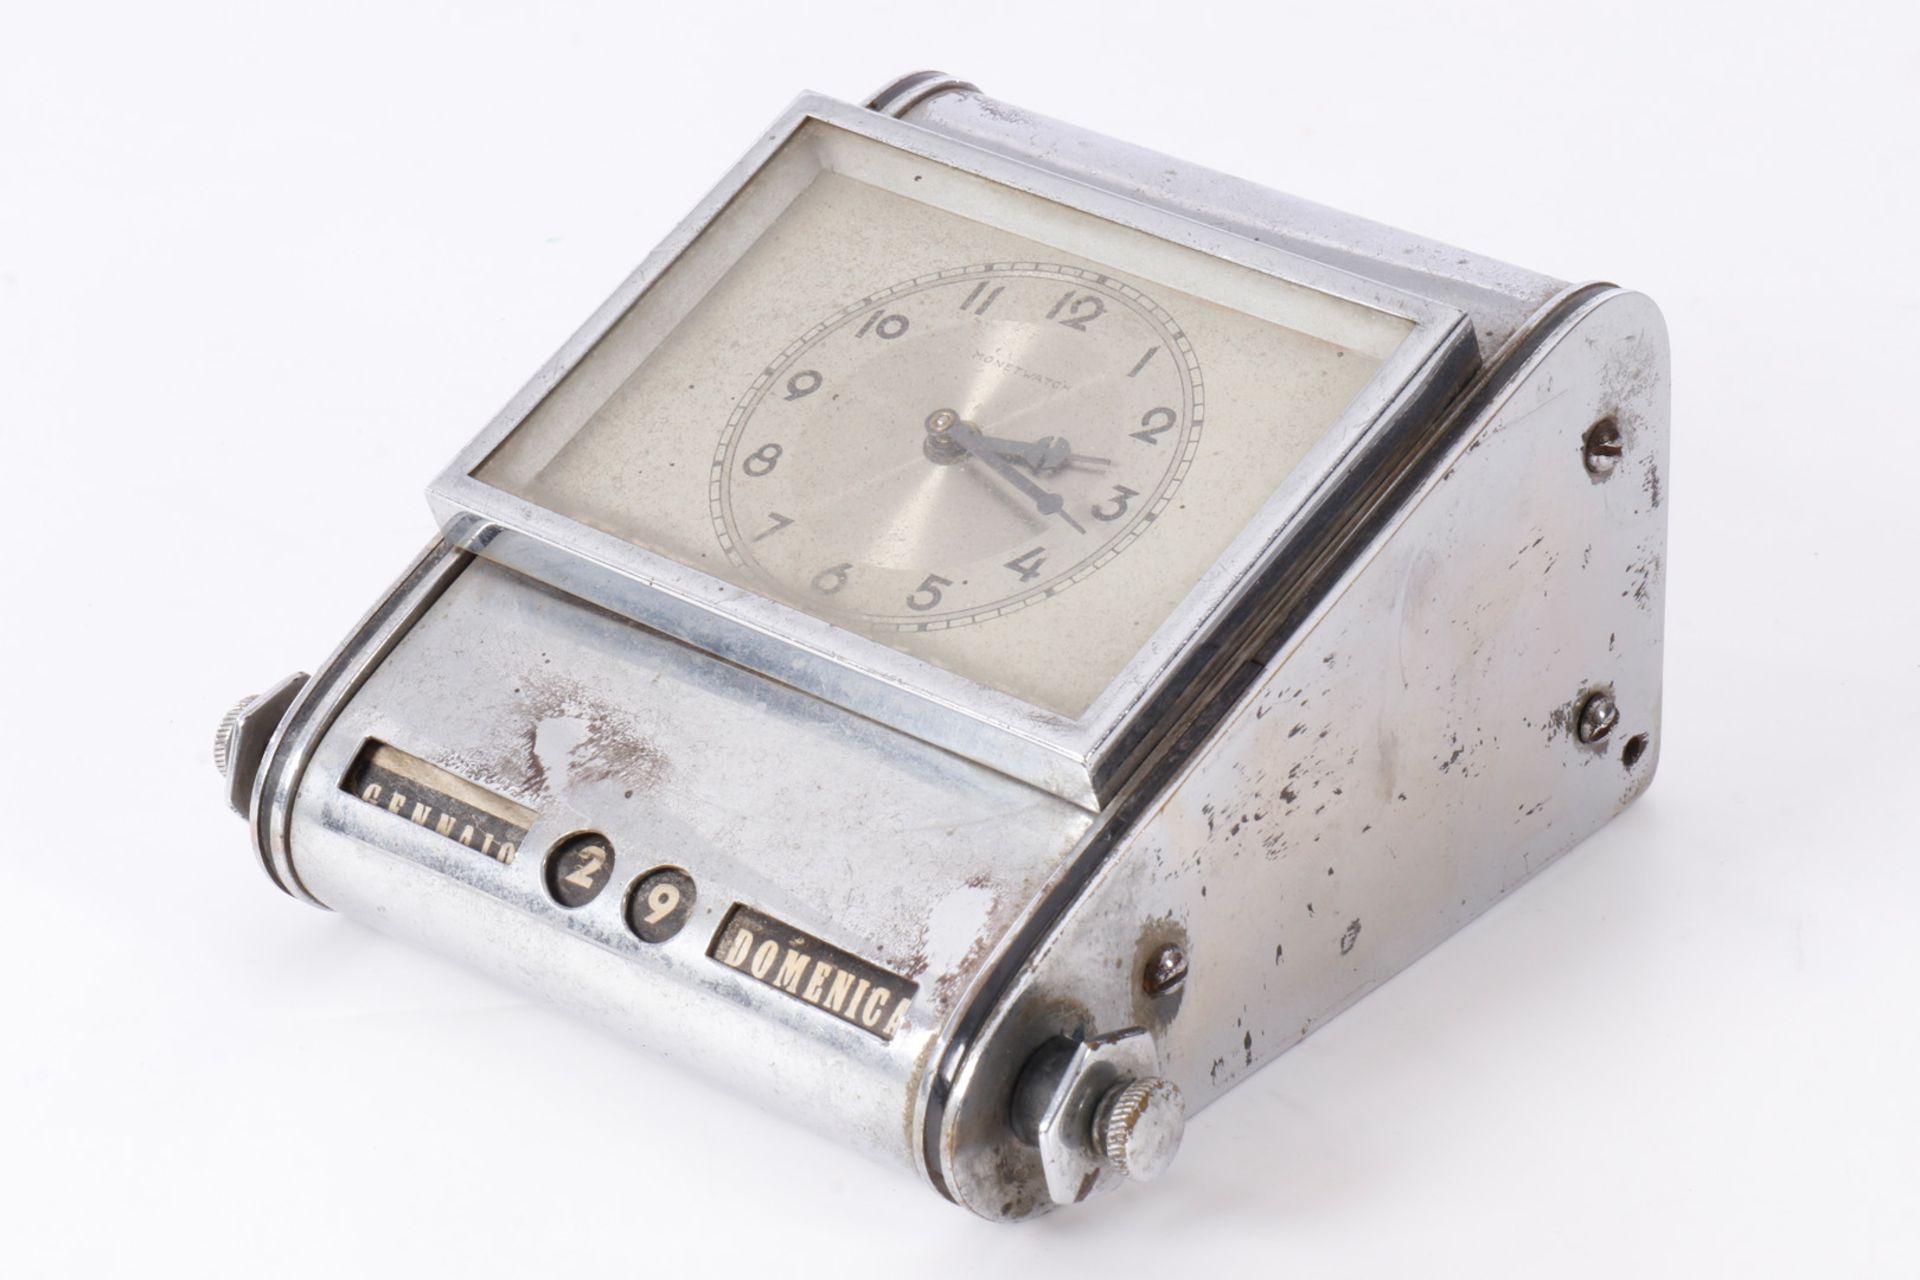 Schreibtischuhr Monet Watch, verchromt, mit Drehkalender, Gebrauchsspuren, Werk muss überholt